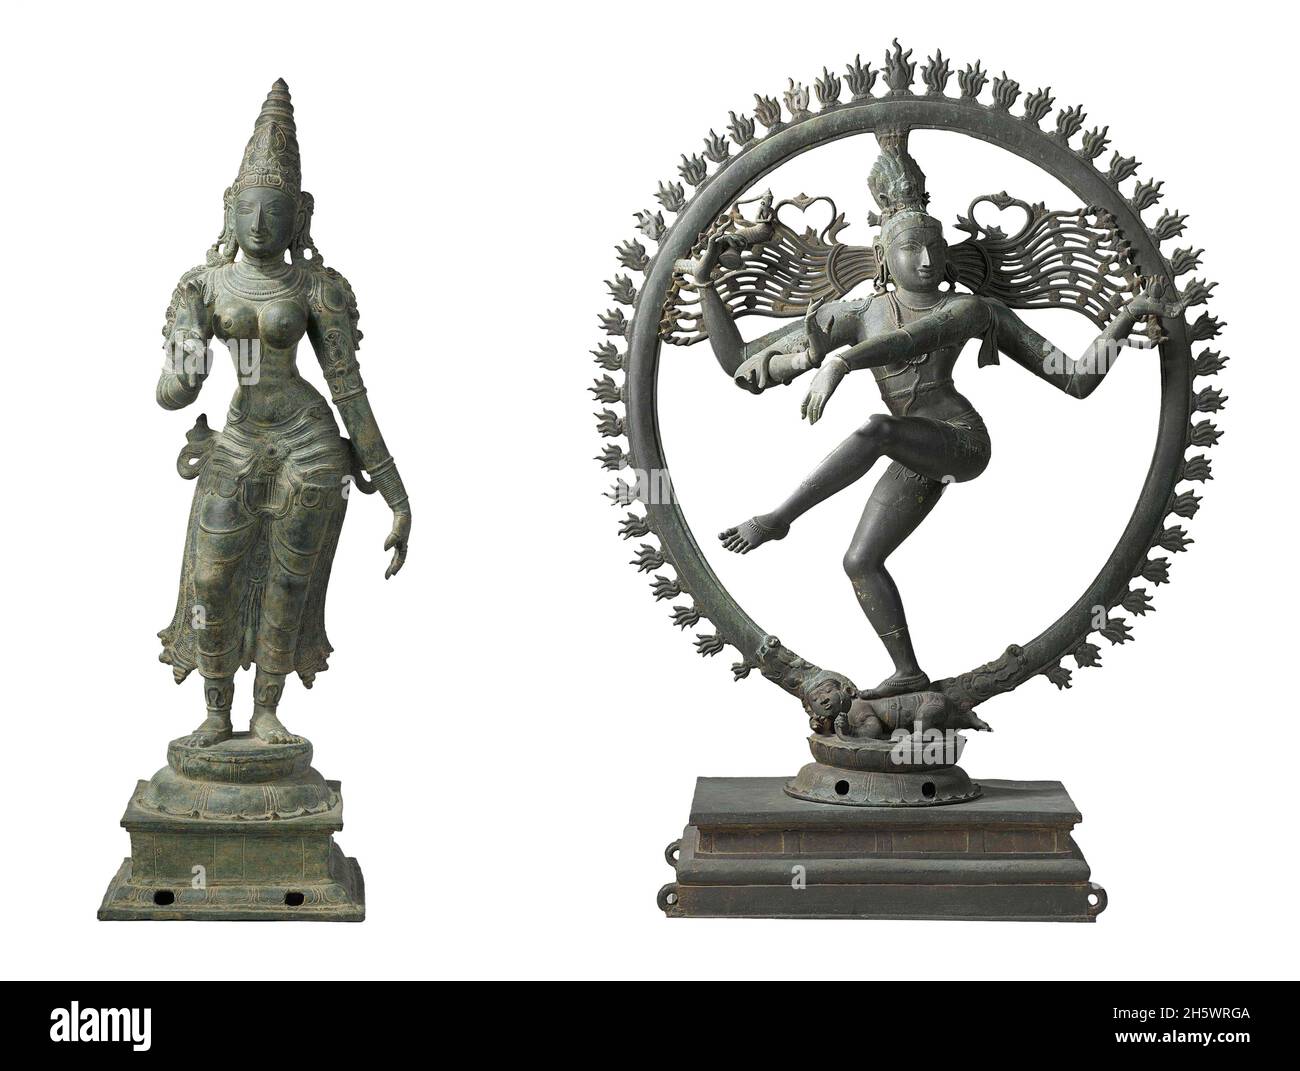 Hinduistischer Bronzeguss mit Parvati und Shiva. LINKS: Parvati, Ehefrau des Hindu-gottes Shiva. Auch bekannt als Uma. Die Seerose in der rechten Hand der Figur bestätigt dies. In einem Tempel hätte sie in ihrer gewohnten Position links von Shiva gestanden, RECHTS: Shiva im Tanz der Schöpfung. Shiva, auch bekannt als Mahadeva, ist eine der wichtigsten Gottheiten des Hinduismus. Er ist das höchste Wesen im Shaivismus, eine der wichtigsten Traditionen des Hinduismus Stockfoto